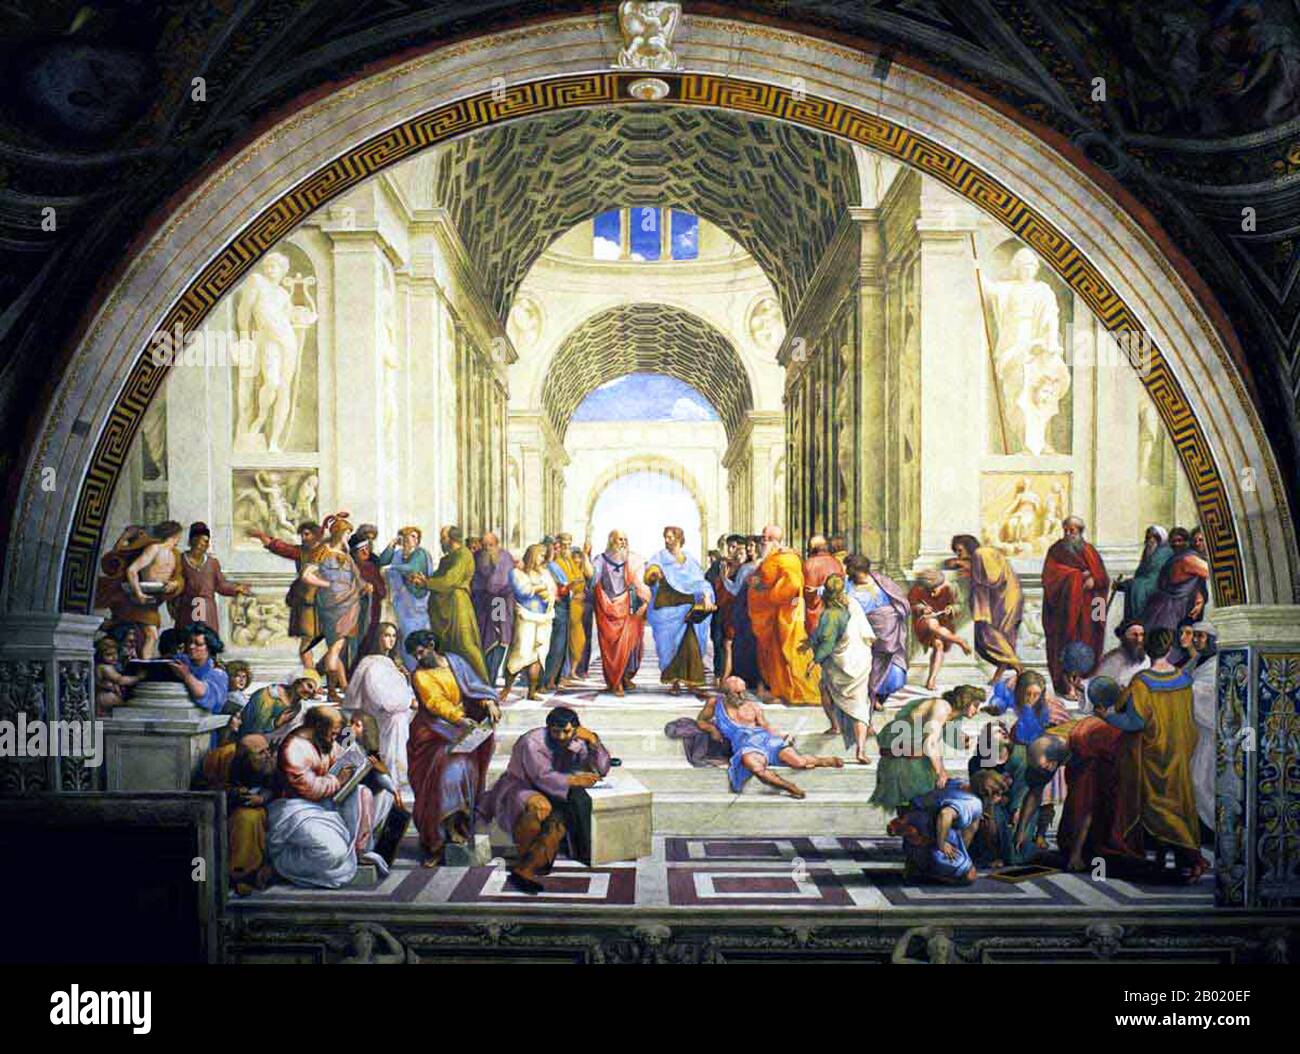 La Scuola di Atene, o Scuola di Atene in italiano, è uno dei più famosi affreschi dell'artista rinascimentale italiano Raffaello. Fu dipinto tra il 1510 e il 1511 come parte della commissione di Raffaello per decorare con affreschi le sale ora conosciute come le Stanze di Raffaello, nel Palazzo Apostolico in Vaticano. La stanza della Segnatura fu la prima delle stanze da decorare, e la Scuola di Atene il secondo dipinto da terminare lì, dopo la Disputa, sulla parete opposta. L'immagine è stata vista da tempo come il capolavoro di Raffaello e la perfetta forma di realizzazione delle guglie classiche Foto Stock